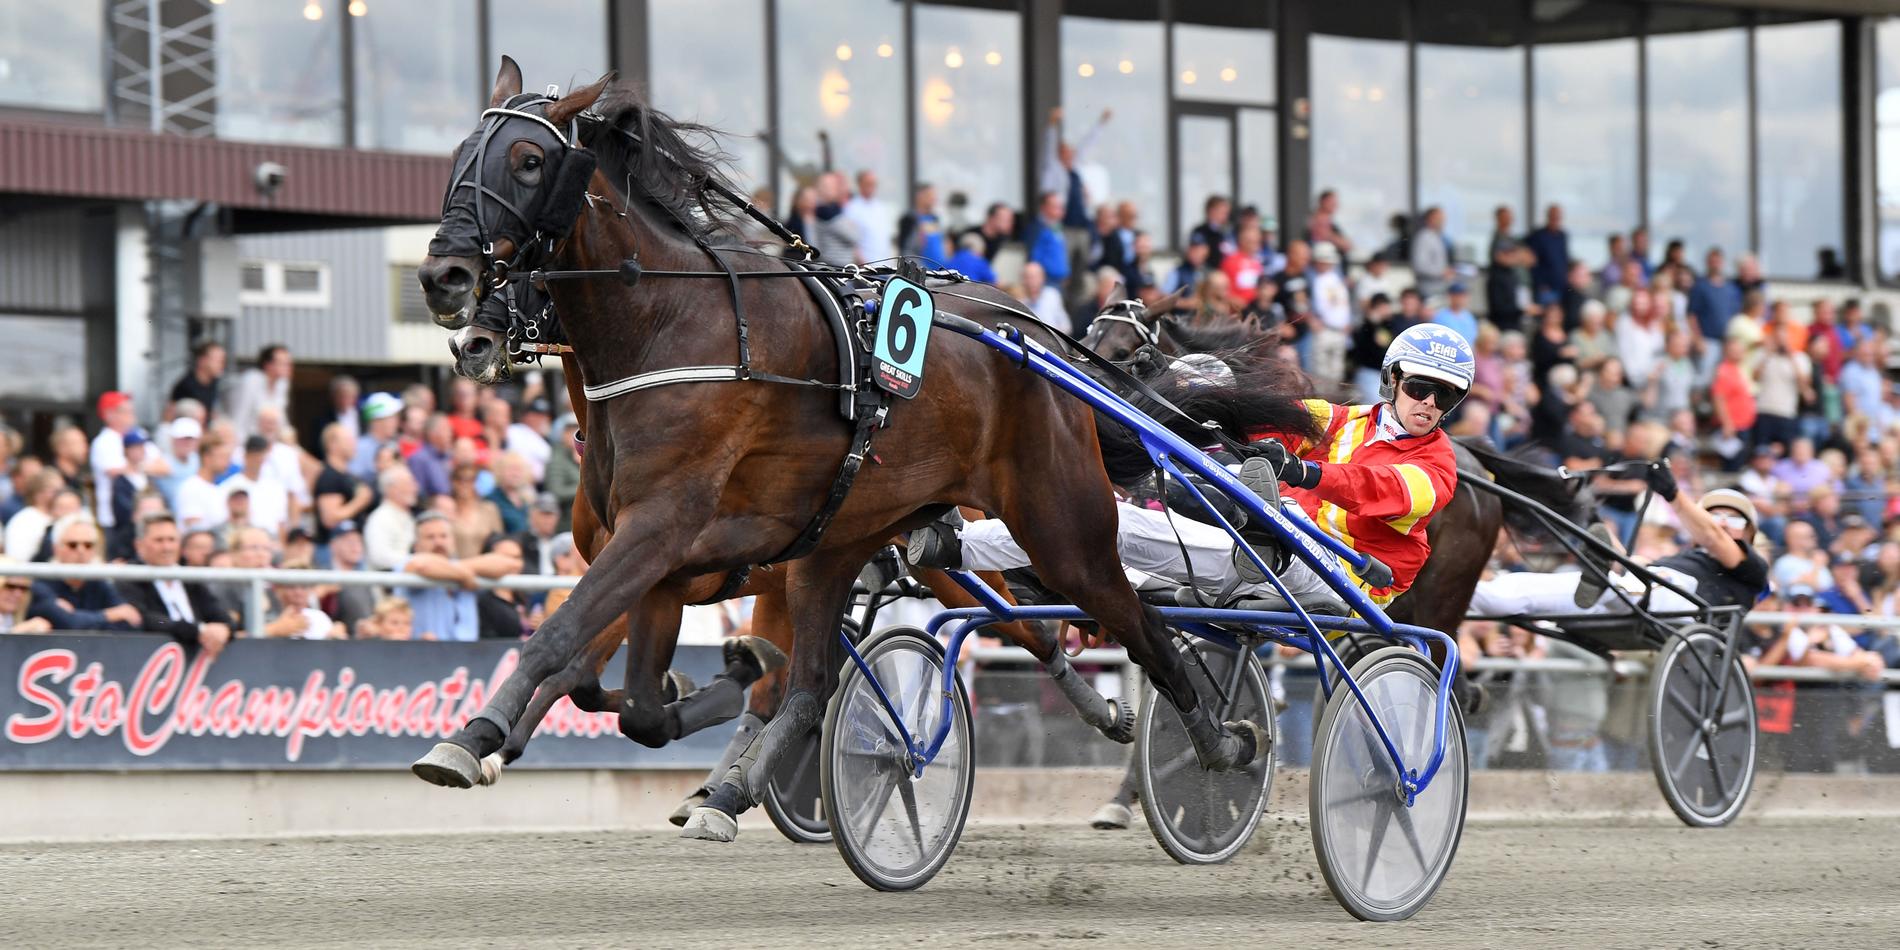 Great Skills och Daniel Wäjersten vann tidigare i år StoChampionatet på Axevalla, en häst som formades av just Hans-Owe Sundberg. 